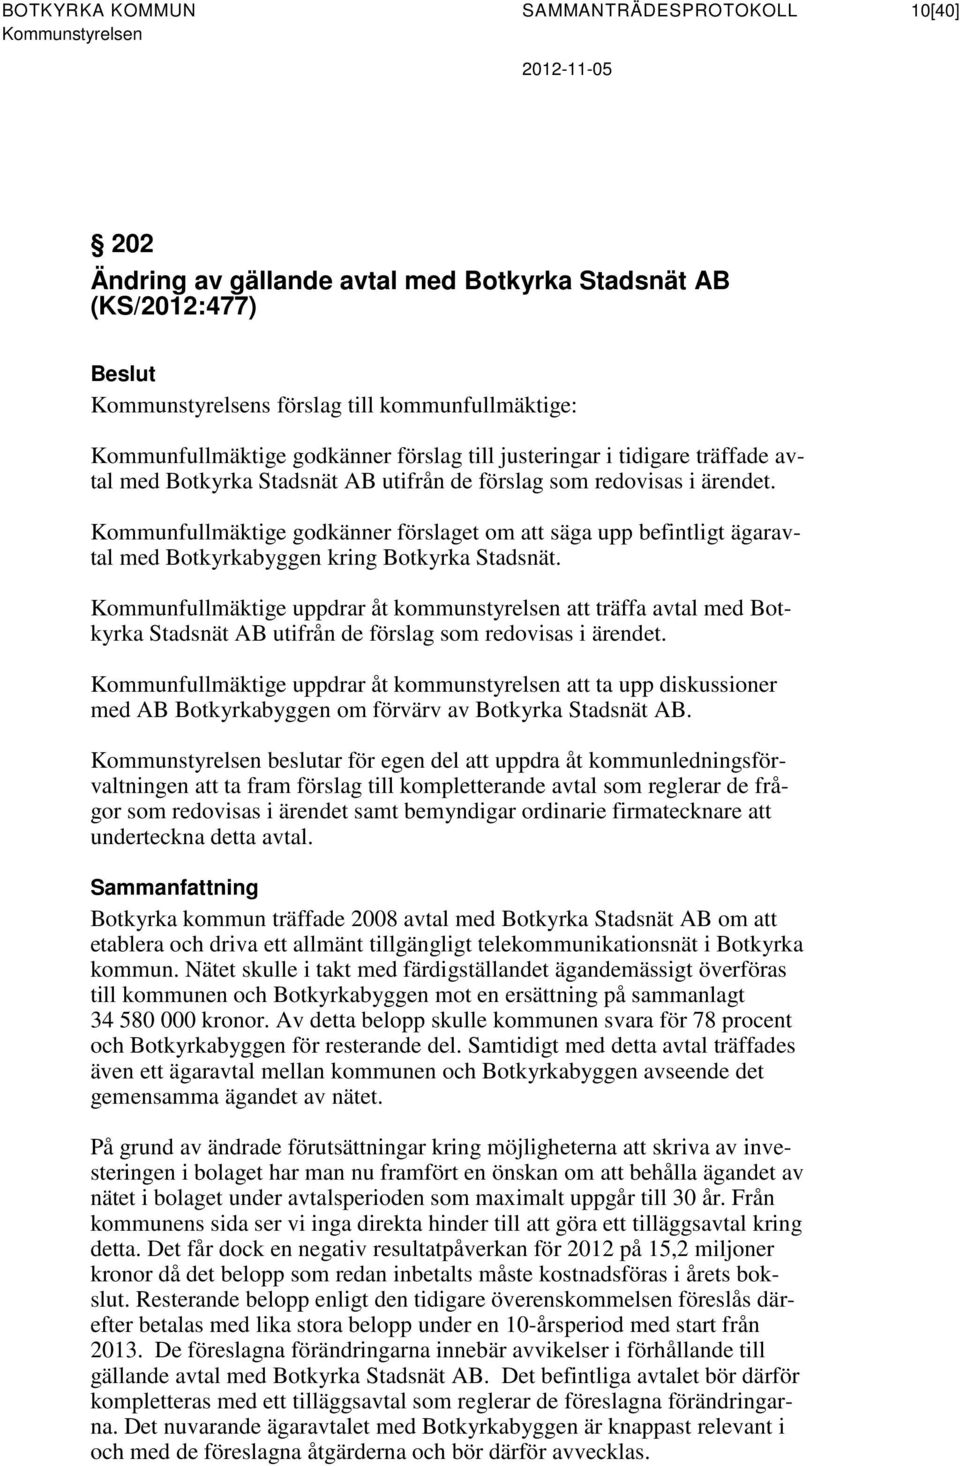 Kommunfullmäktige godkänner förslaget om att säga upp befintligt ägaravtal med Botkyrkabyggen kring Botkyrka Stadsnät.